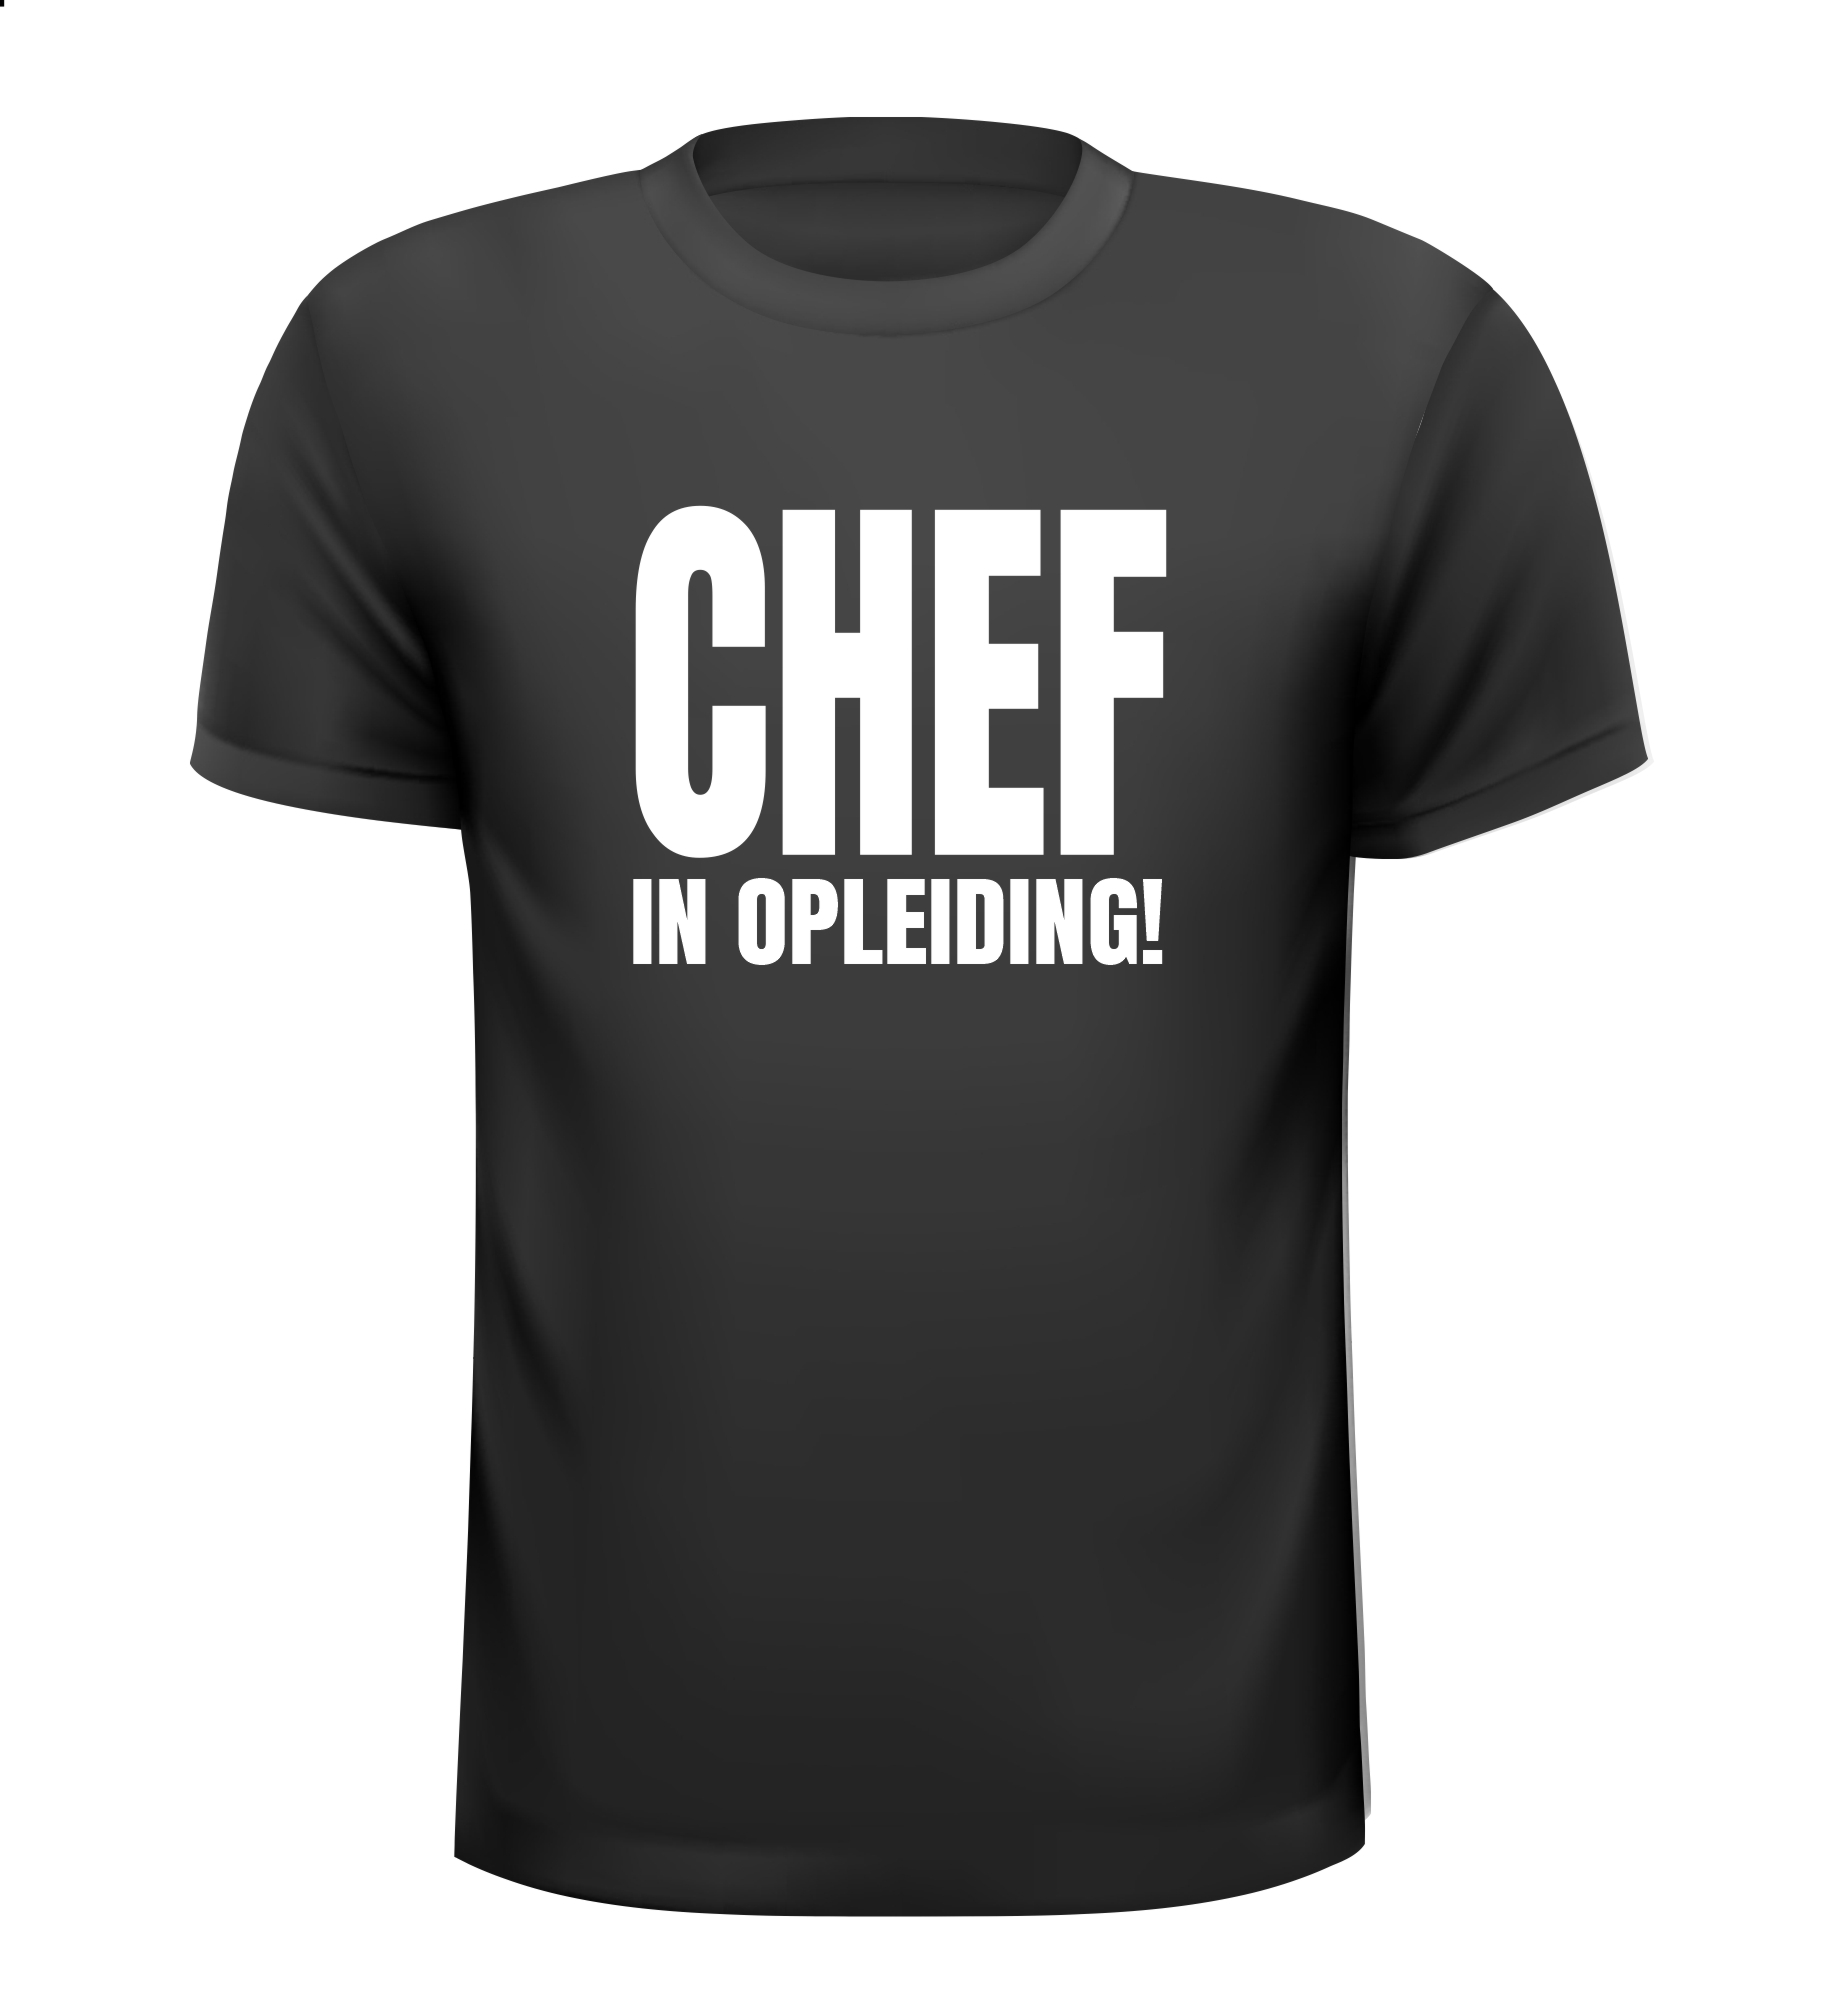 Shirtje voor een chef in opleiding!